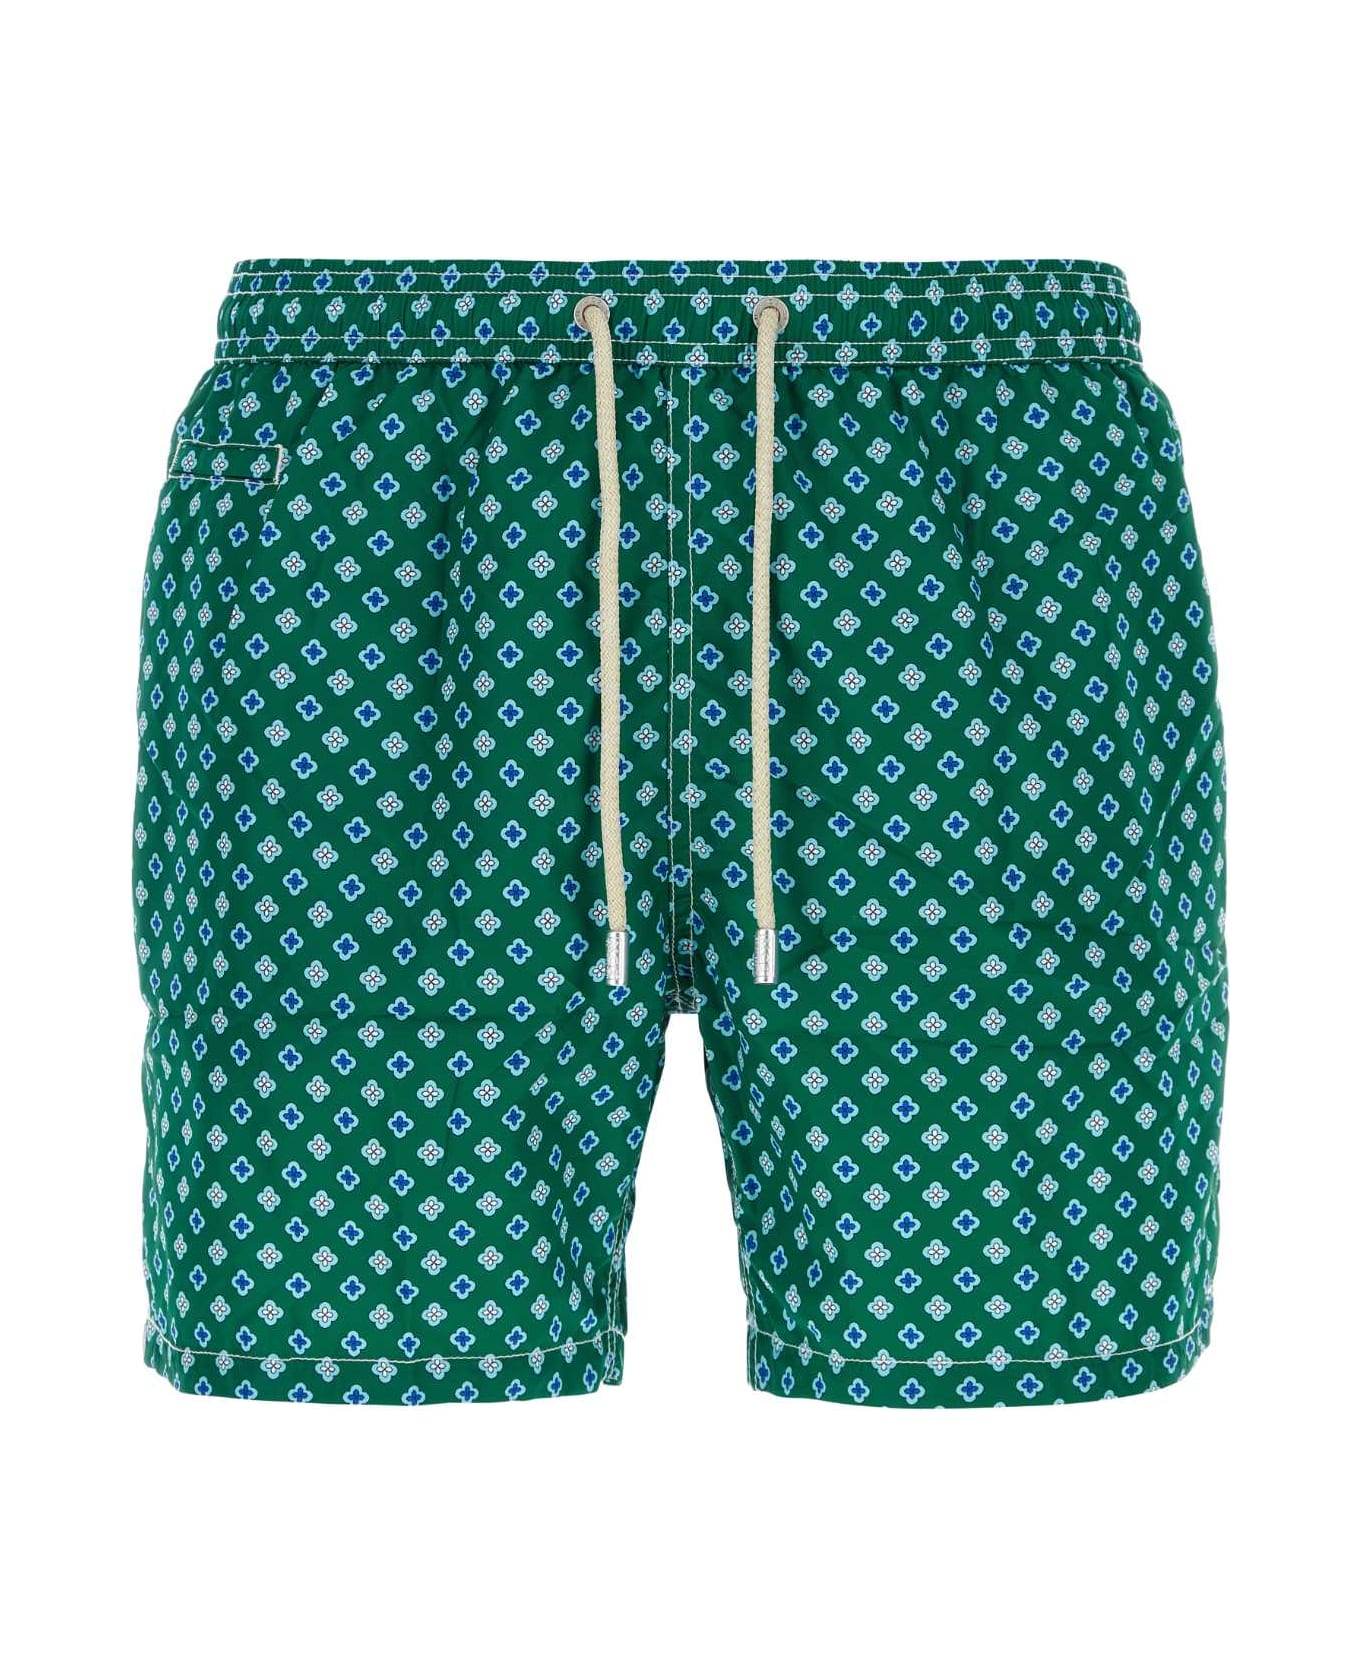 MC2 Saint Barth Printed Polyester Swimming Shorts - 51